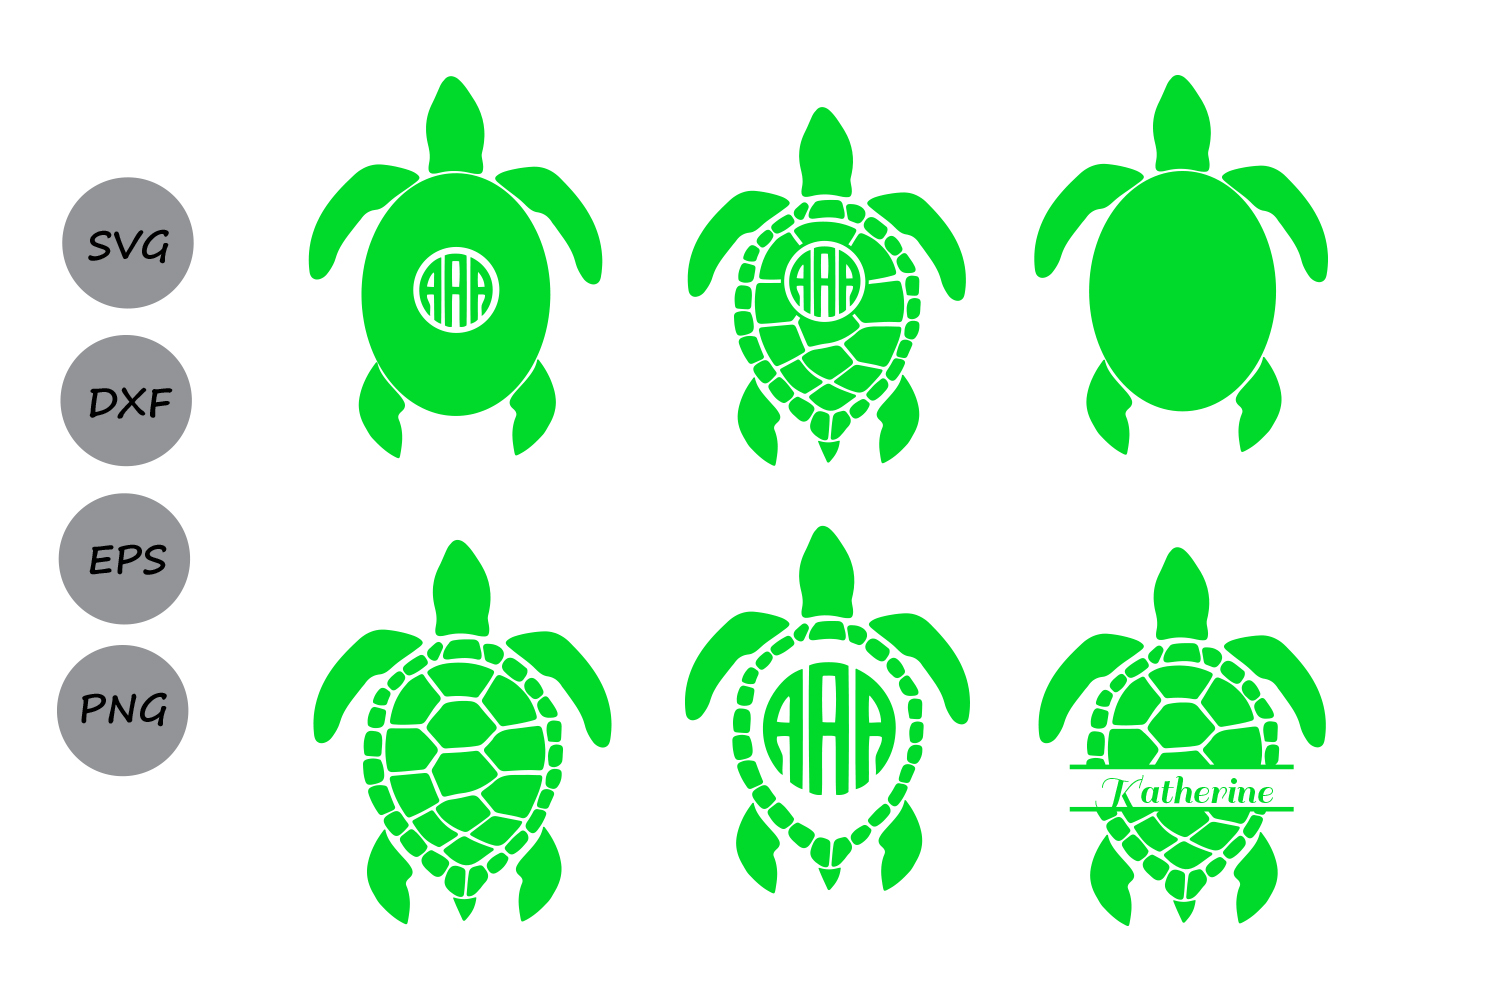 Download Sea Turtle Monogram SVG, Sea Turtle SVG, Sea Turtle ...